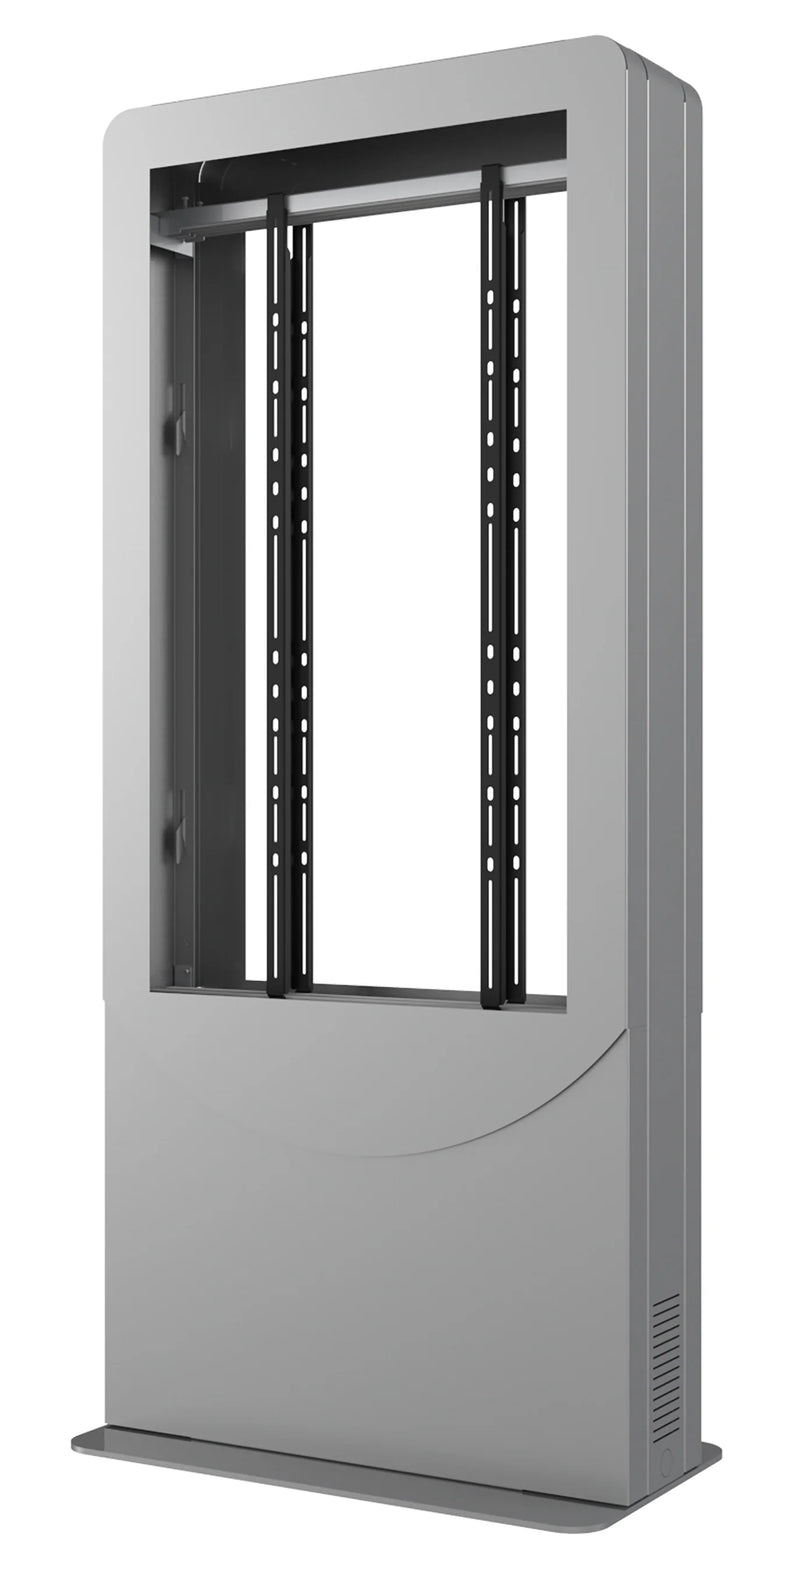 Peerless-AV KIPC2565B-3-S Floorstanding Portrait Back-to-Back Kiosk for Two 65" Displays up to 3" Deep (Silver)